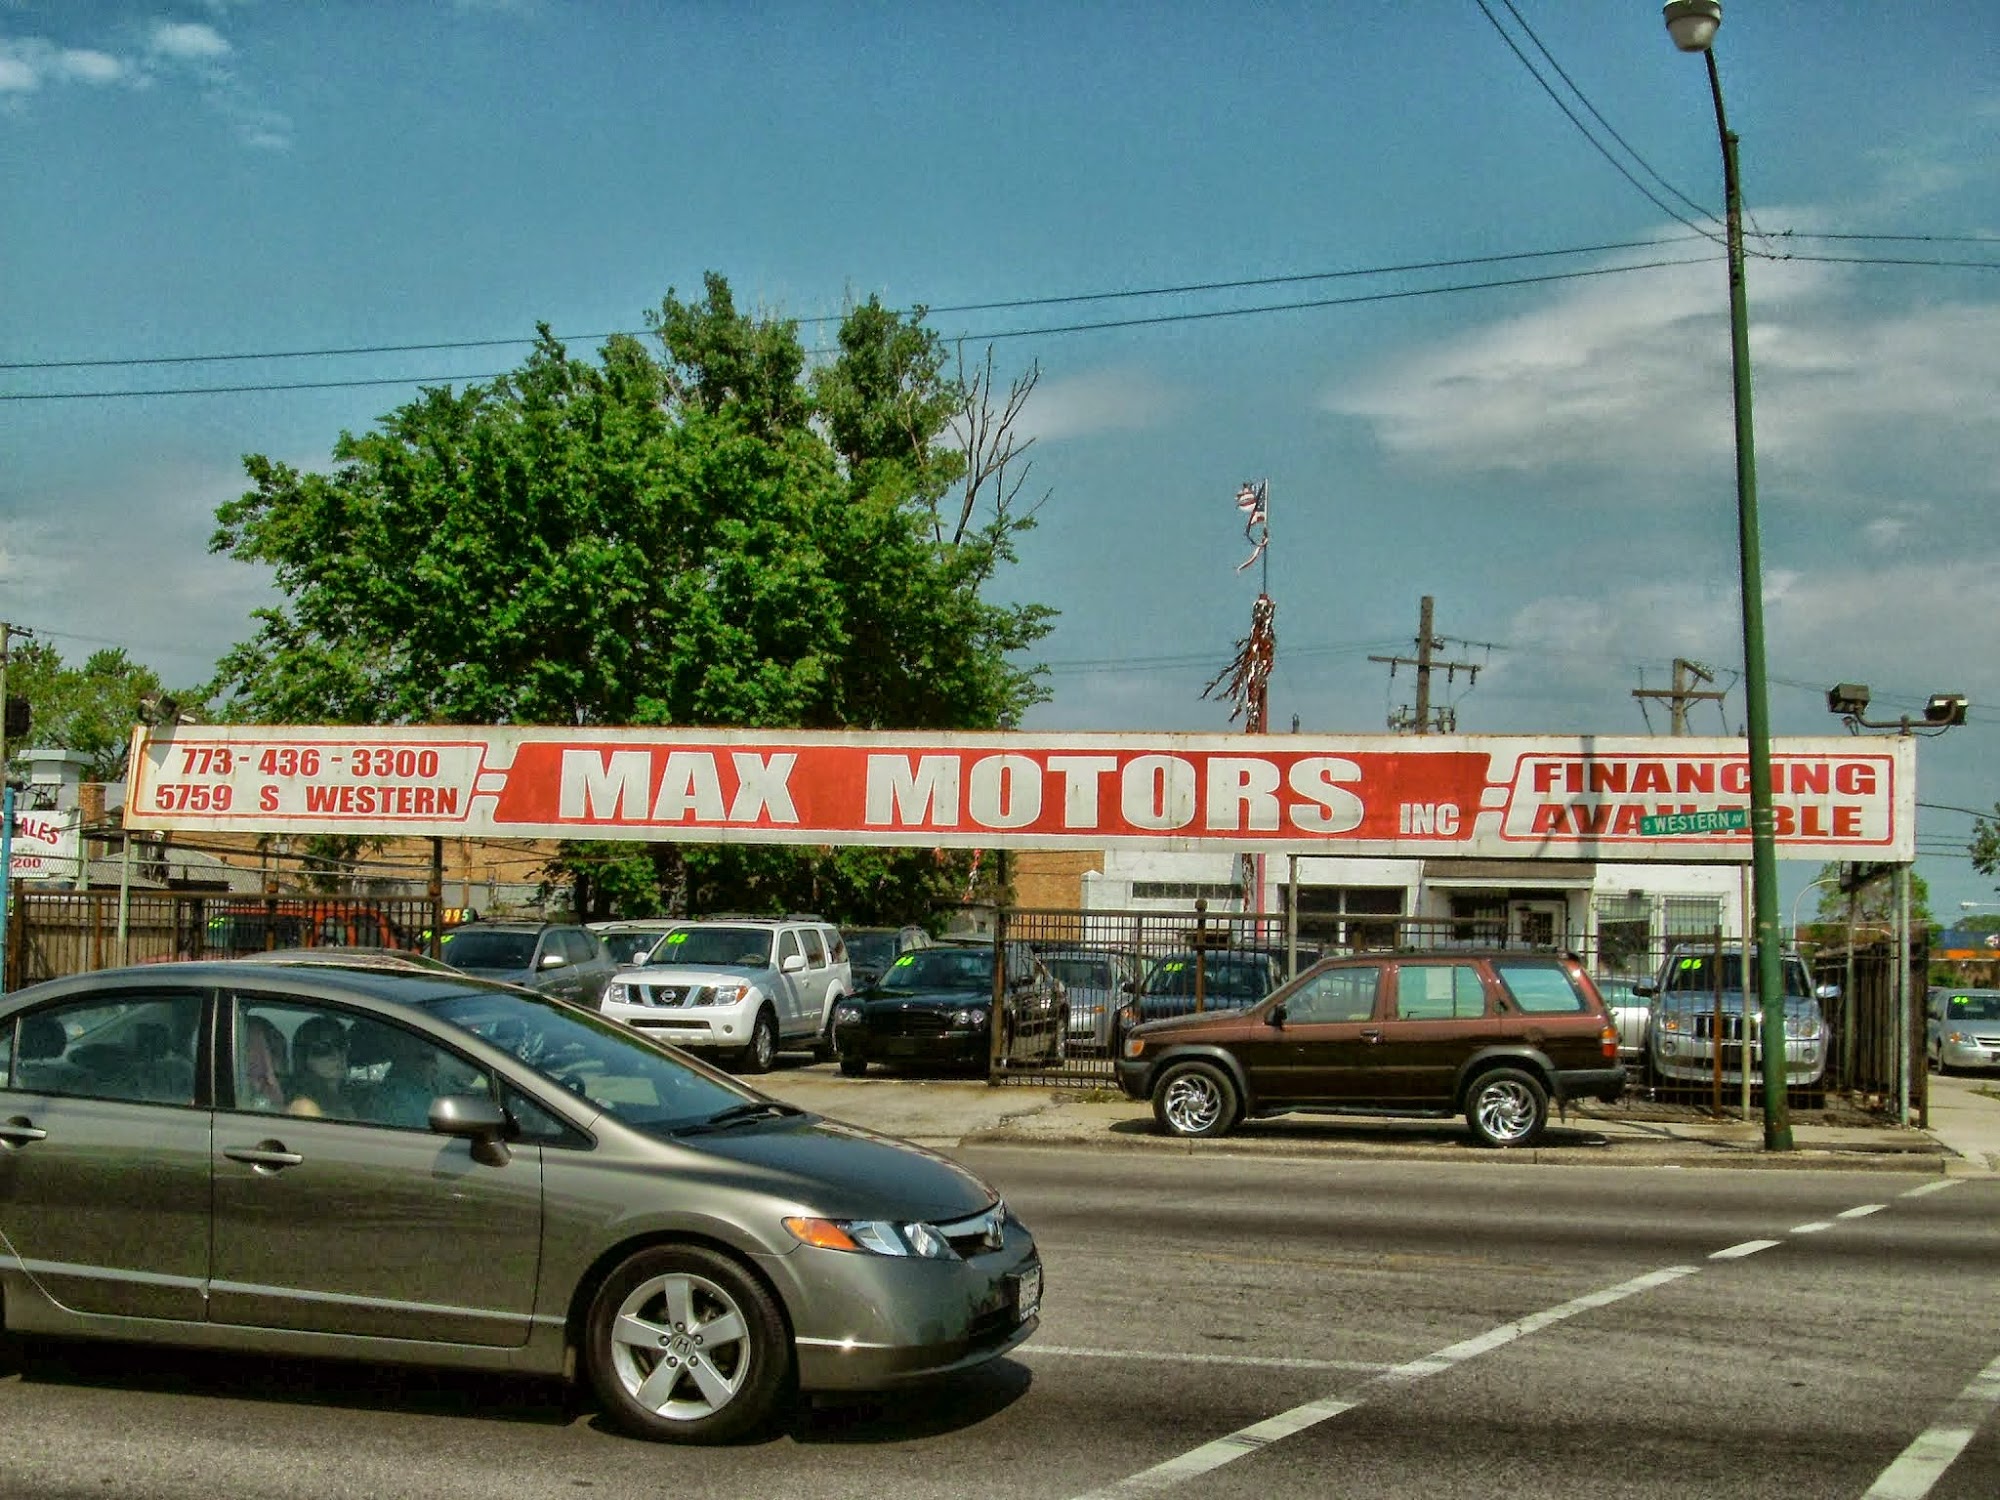 Max Motors Inc